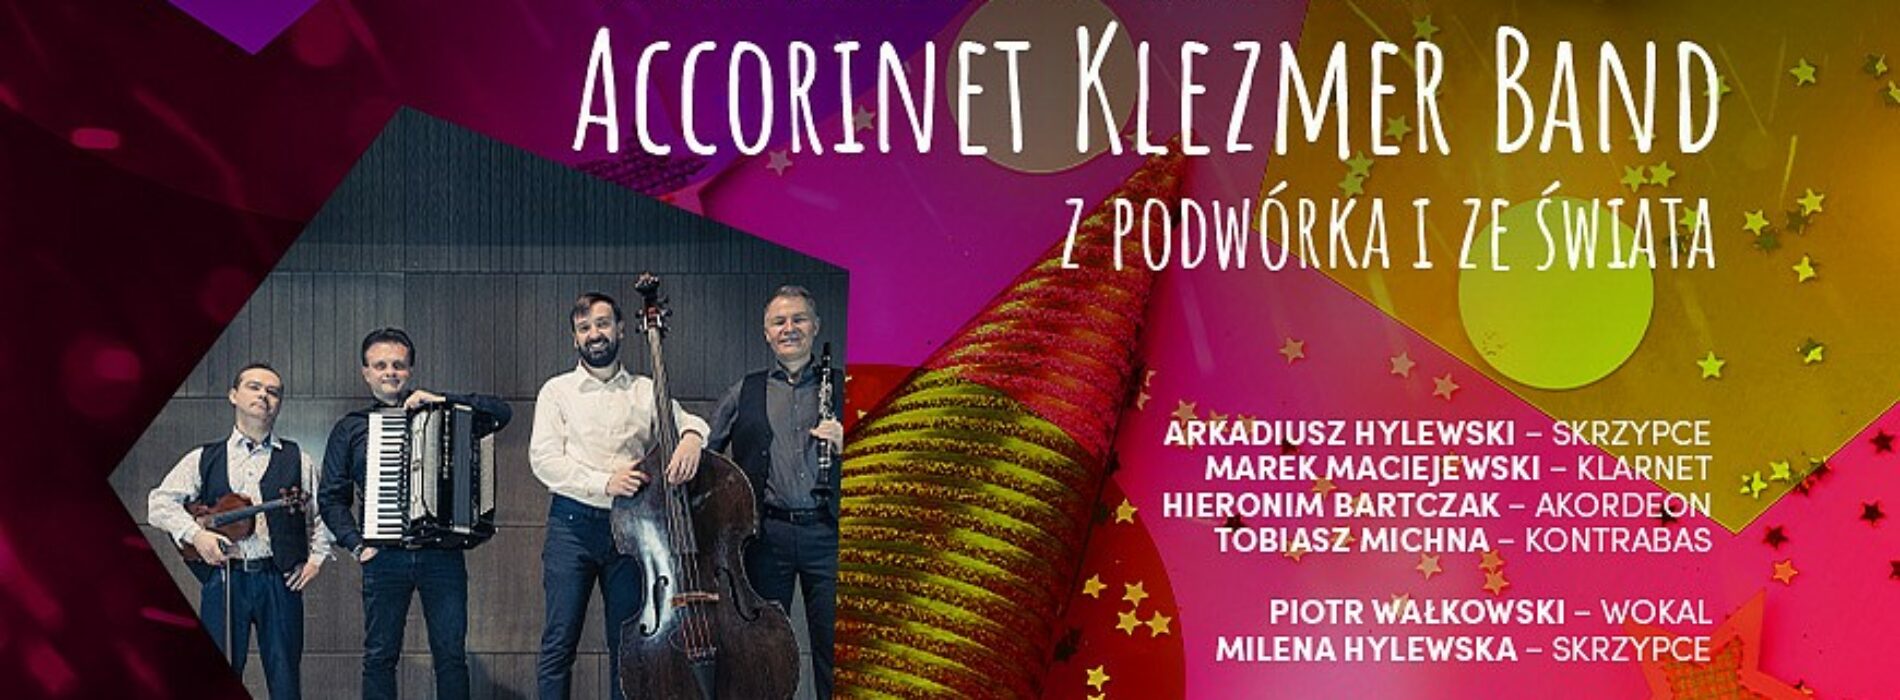 Accorinet Klezmer Band w Filharmonii Kaliskiej